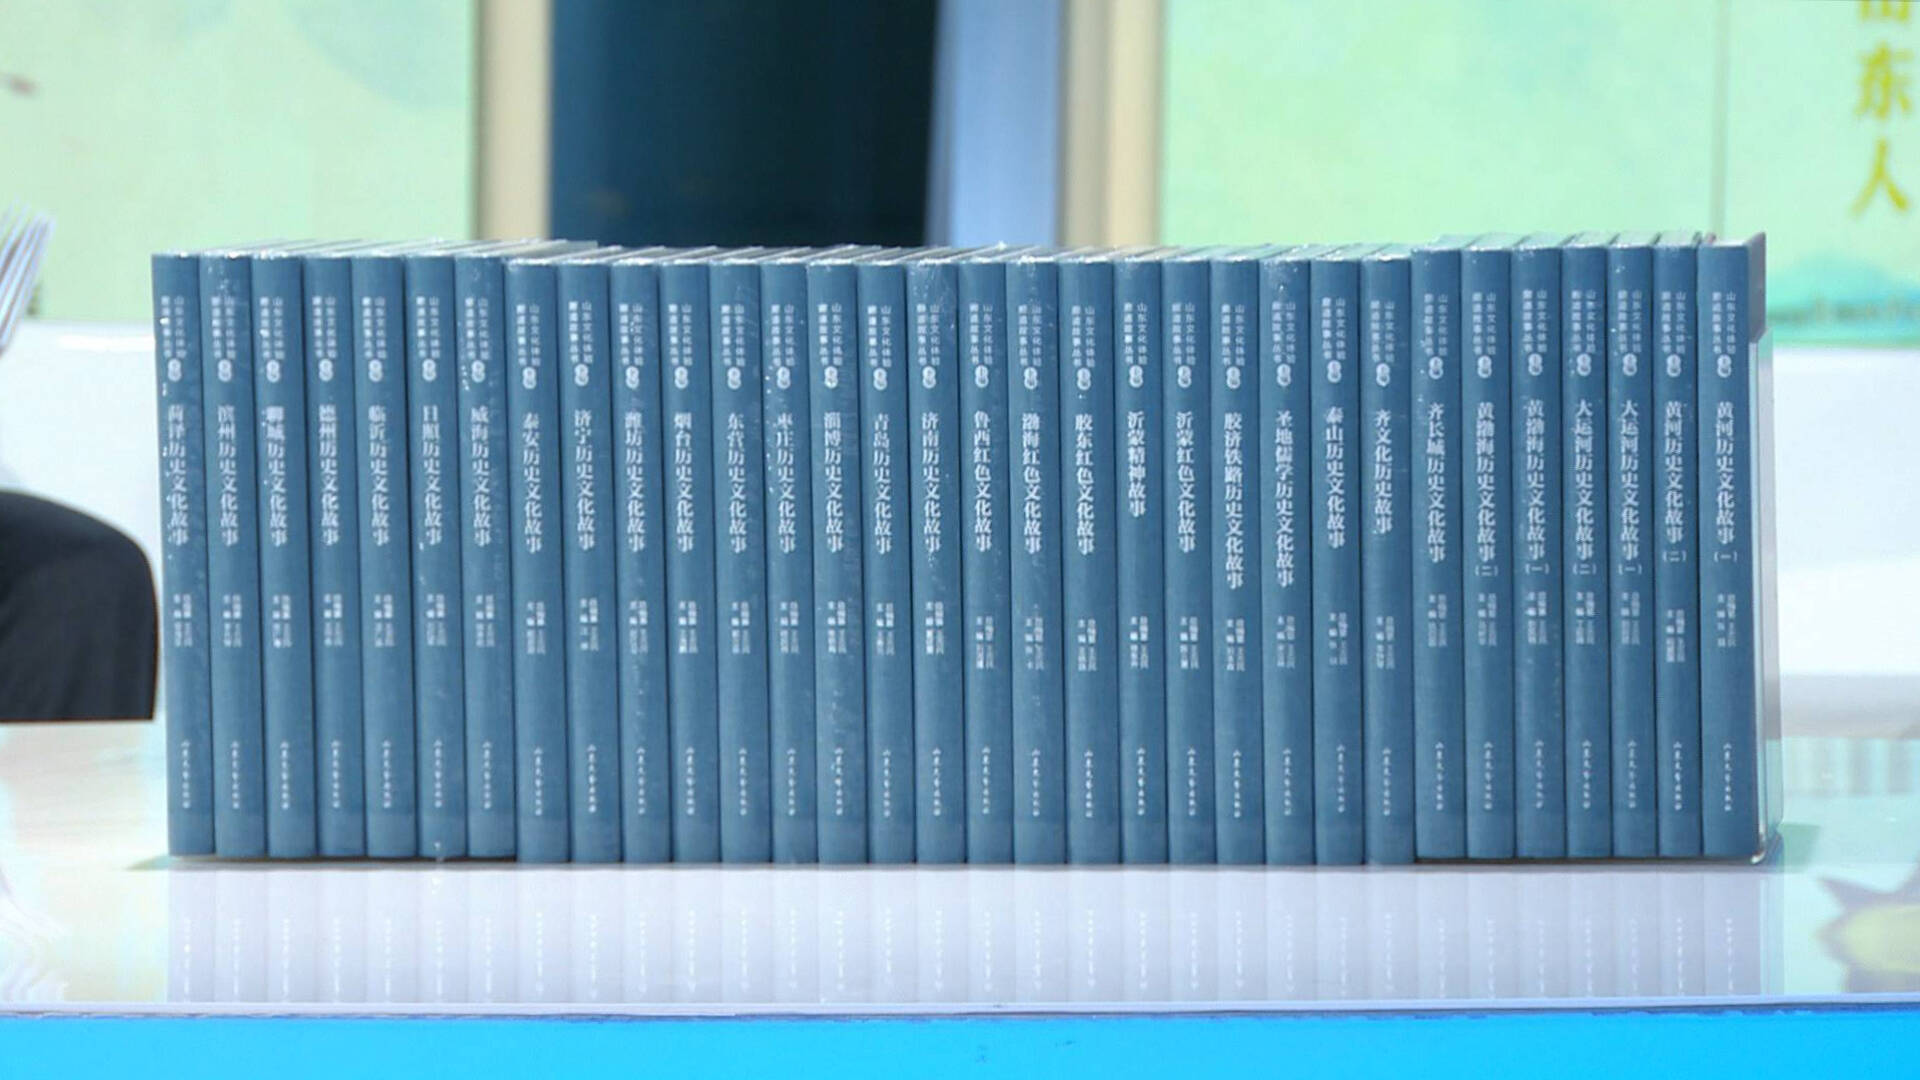 共32卷、包含2664个故事 这套关于山东的丛书值得收藏